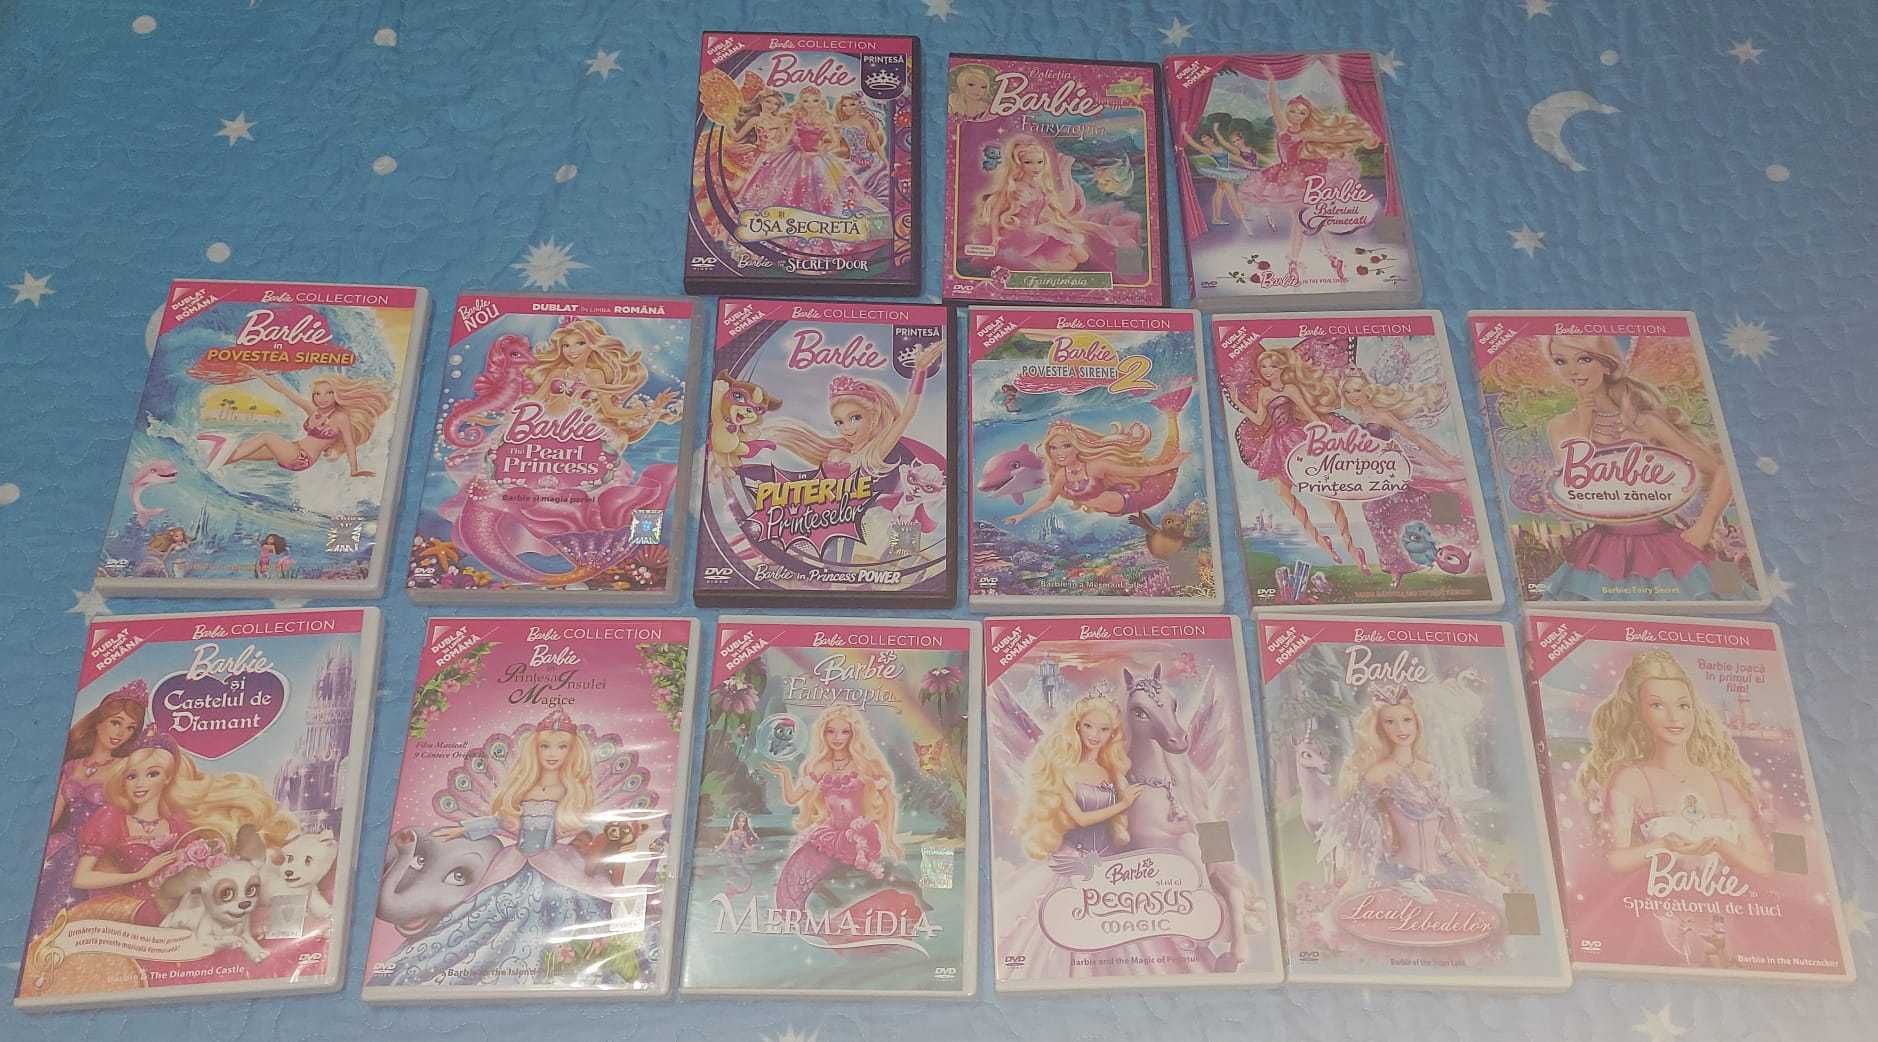 Vând DVD-uri cu filme si seriale Violetta, Barbie, Tom si Jerry etc.